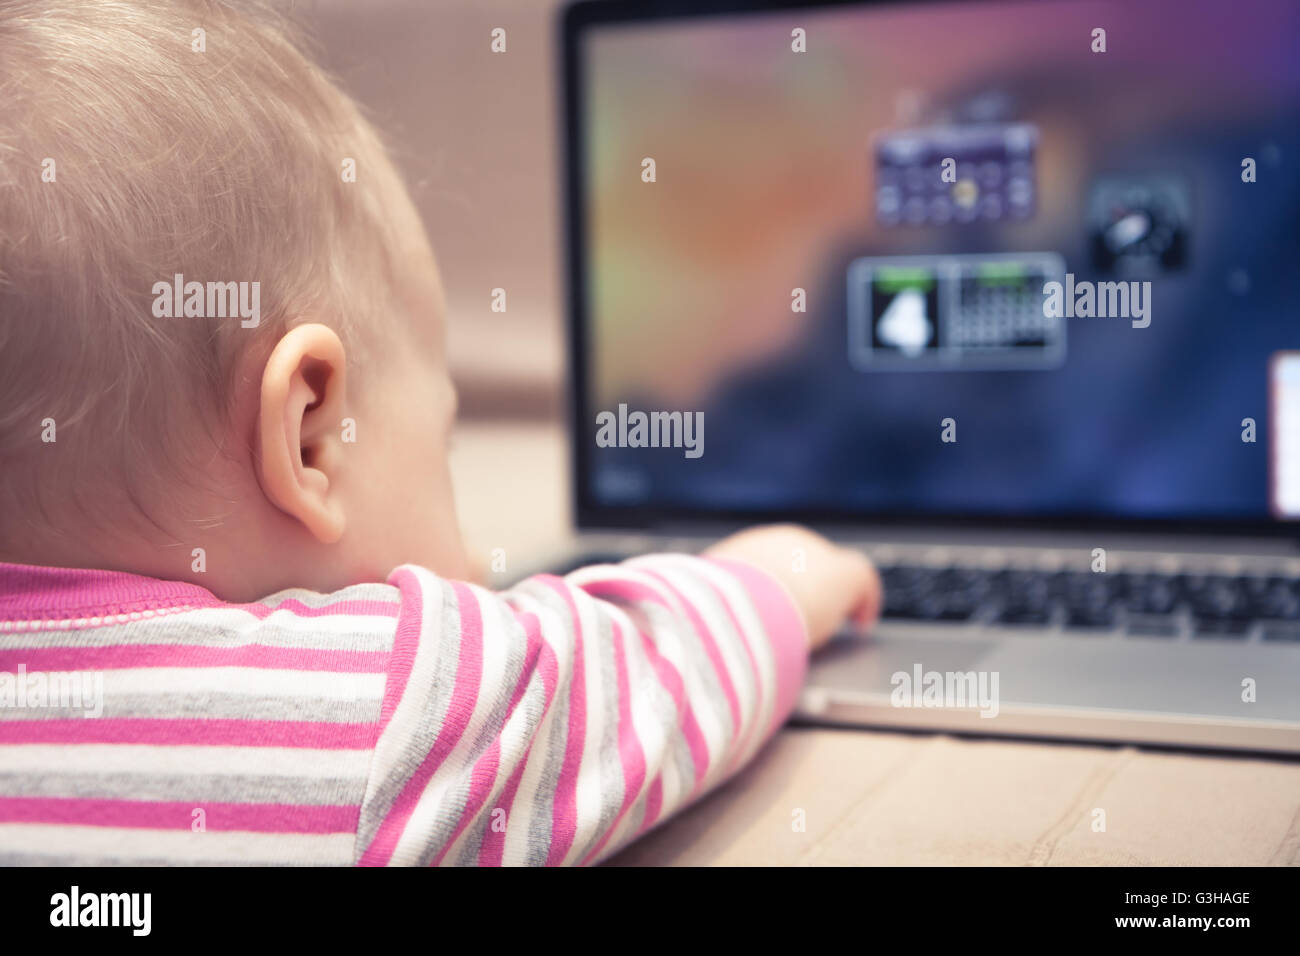 Bébé à travailler sur un ordinateur portable. Vue de derrière le bébé avec la main d'atteindre à l'ordinateur Banque D'Images